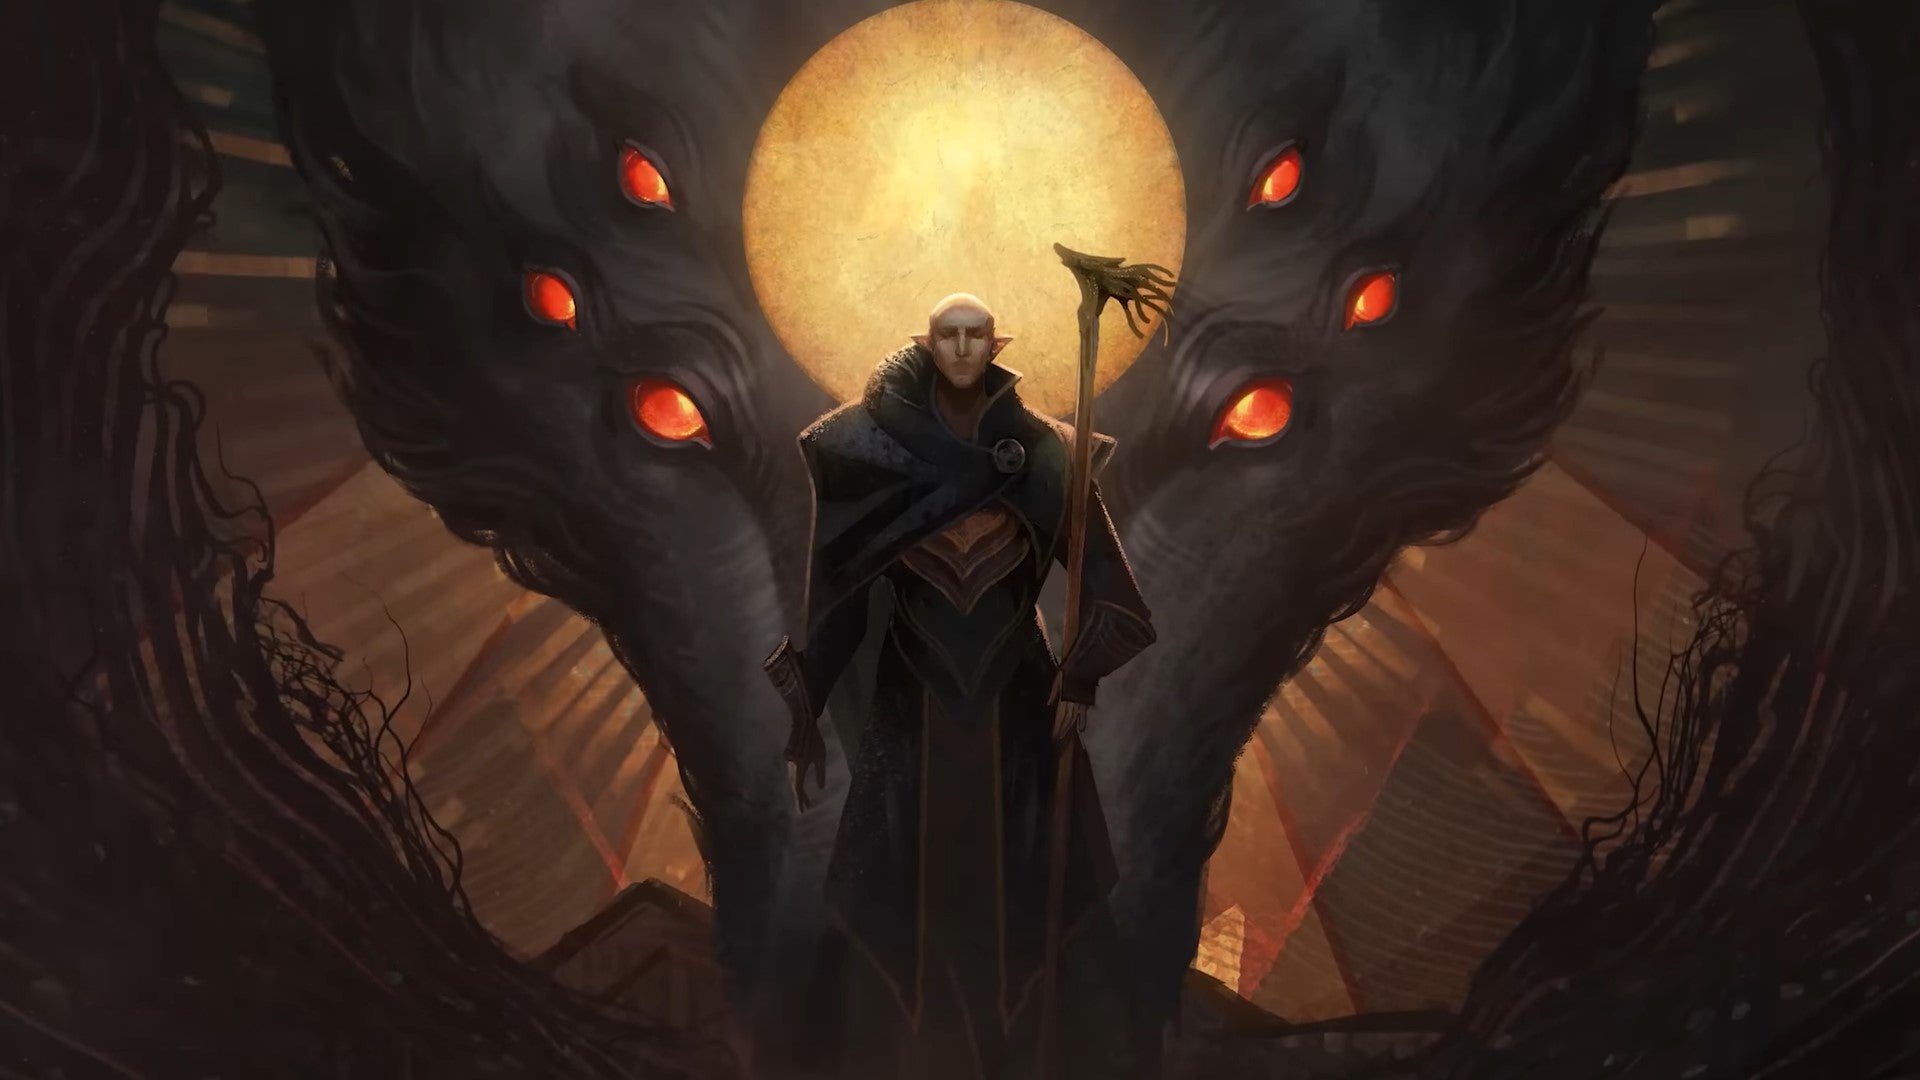 Image for Kdo je Dreadwolf v animačce z Dragon Age